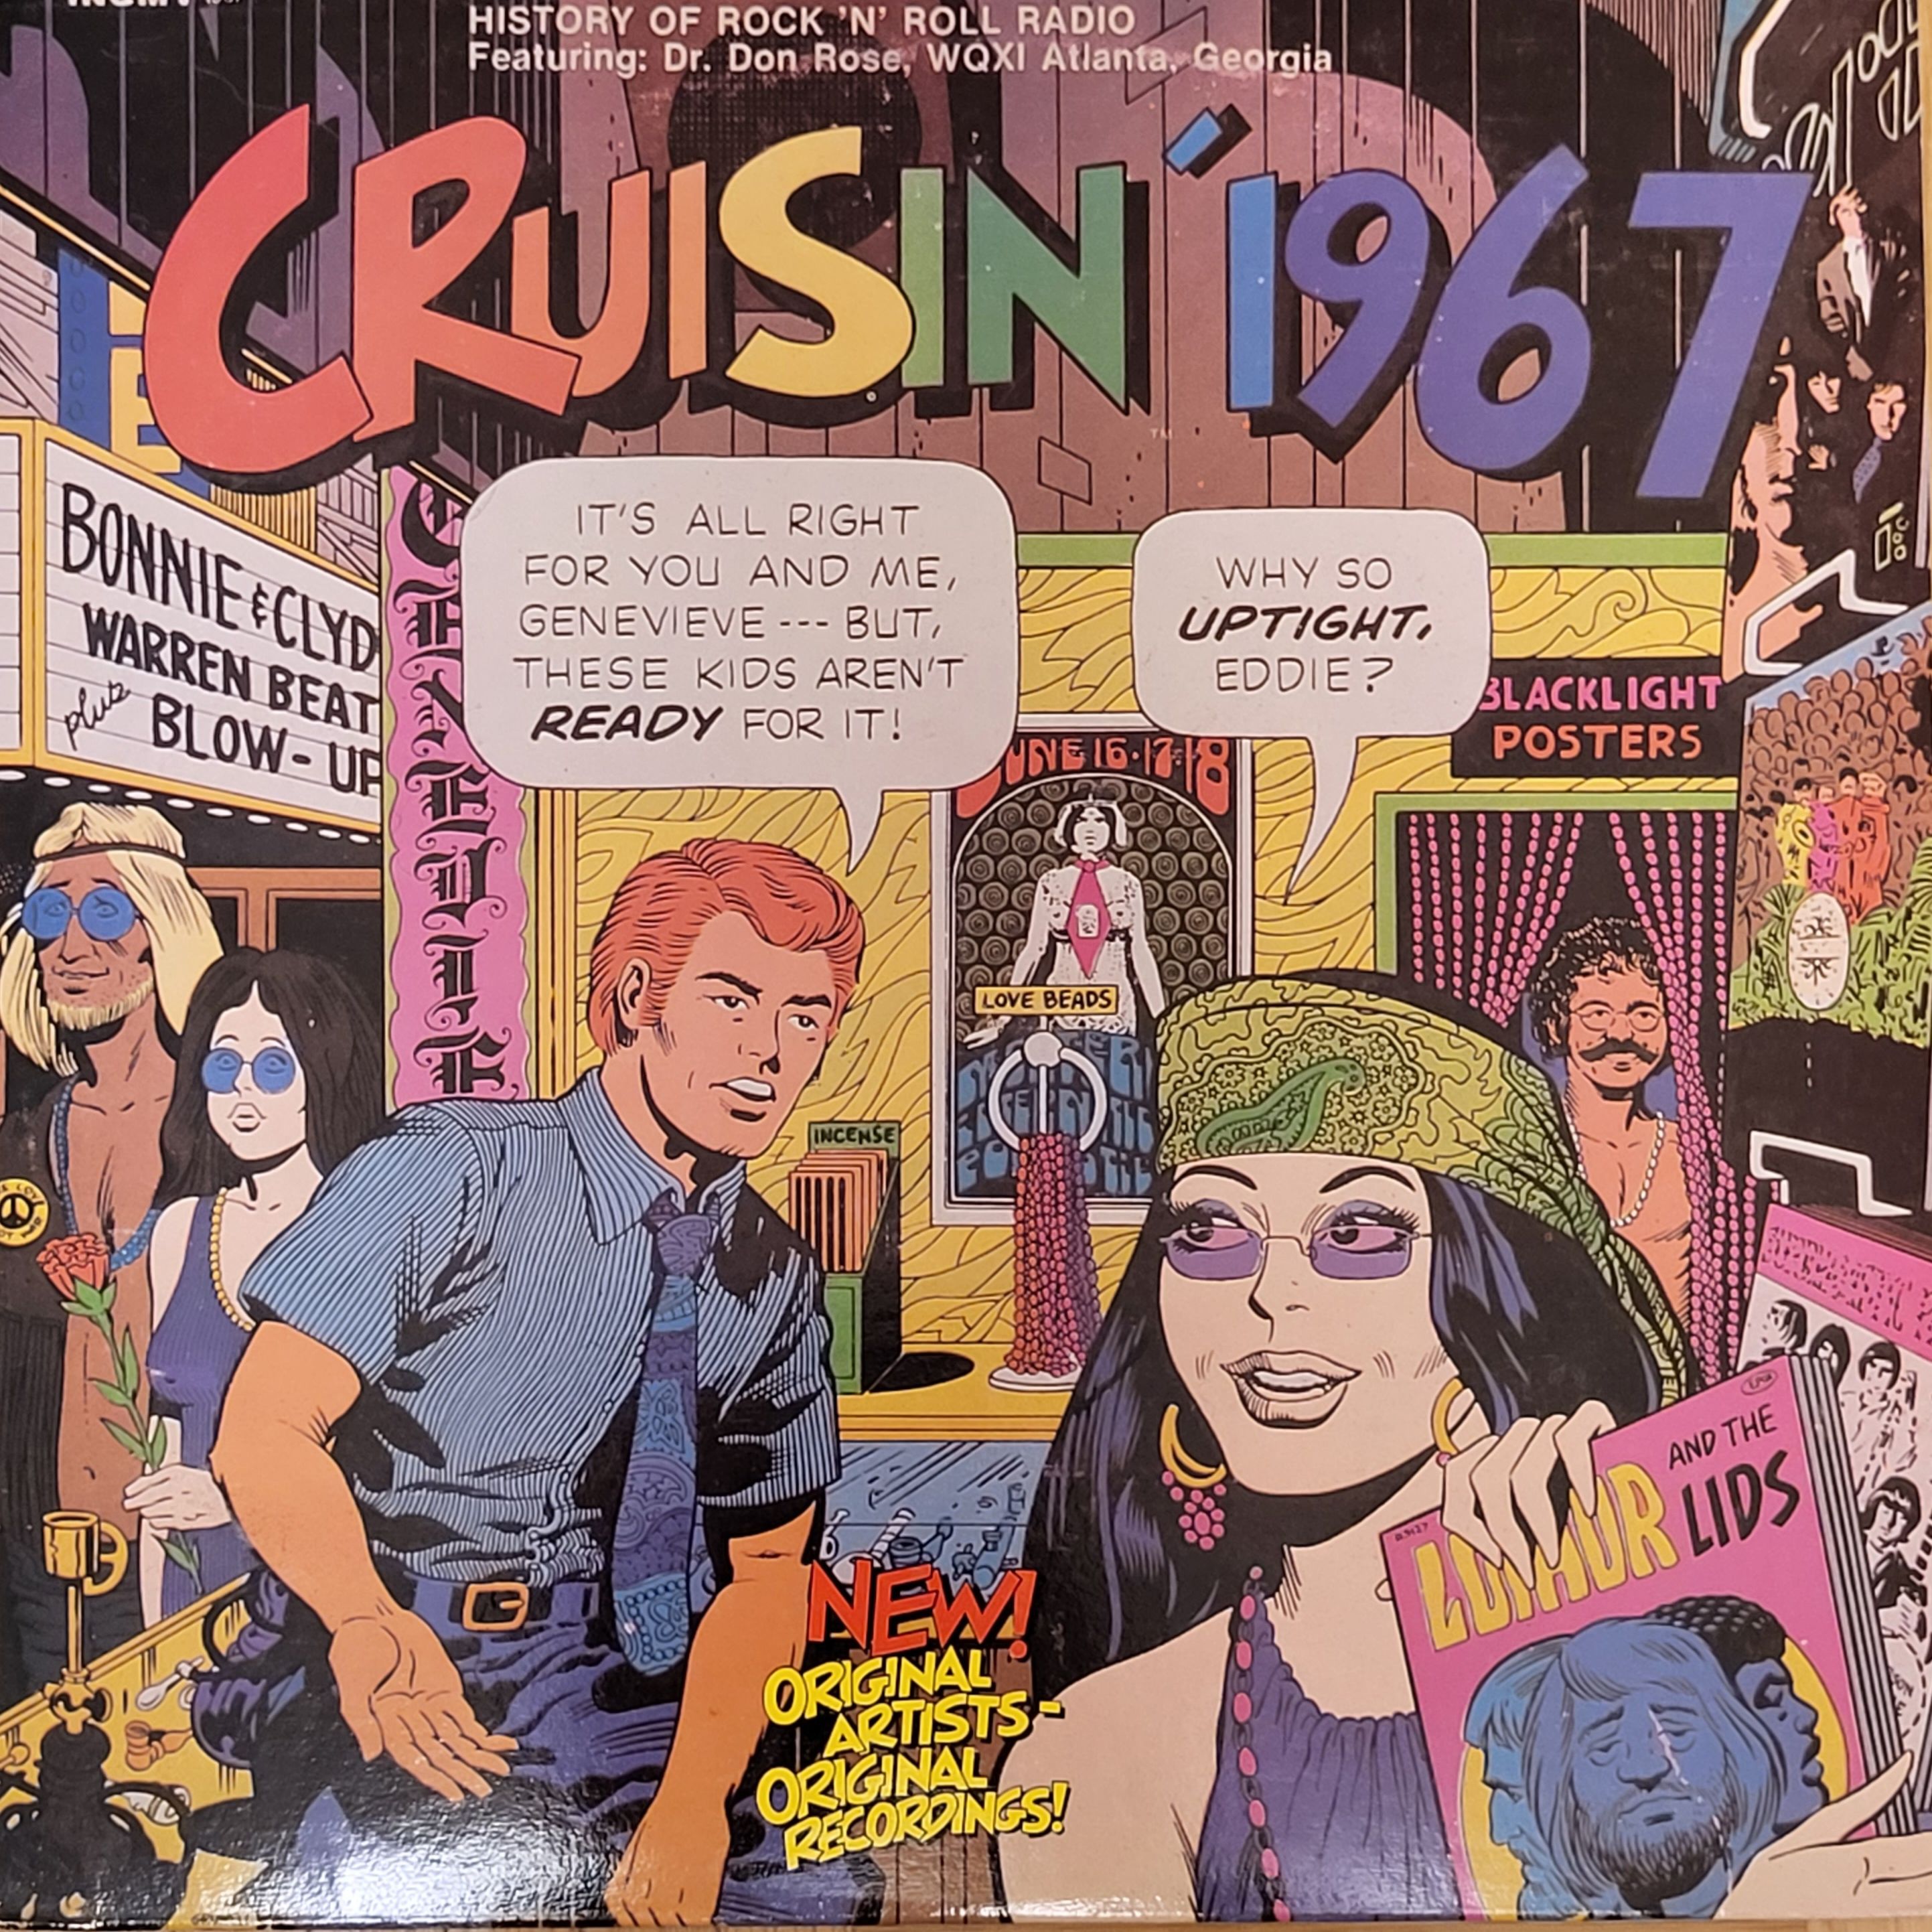 Various - history of rock'n'roll radio Cruising 1967 LP 